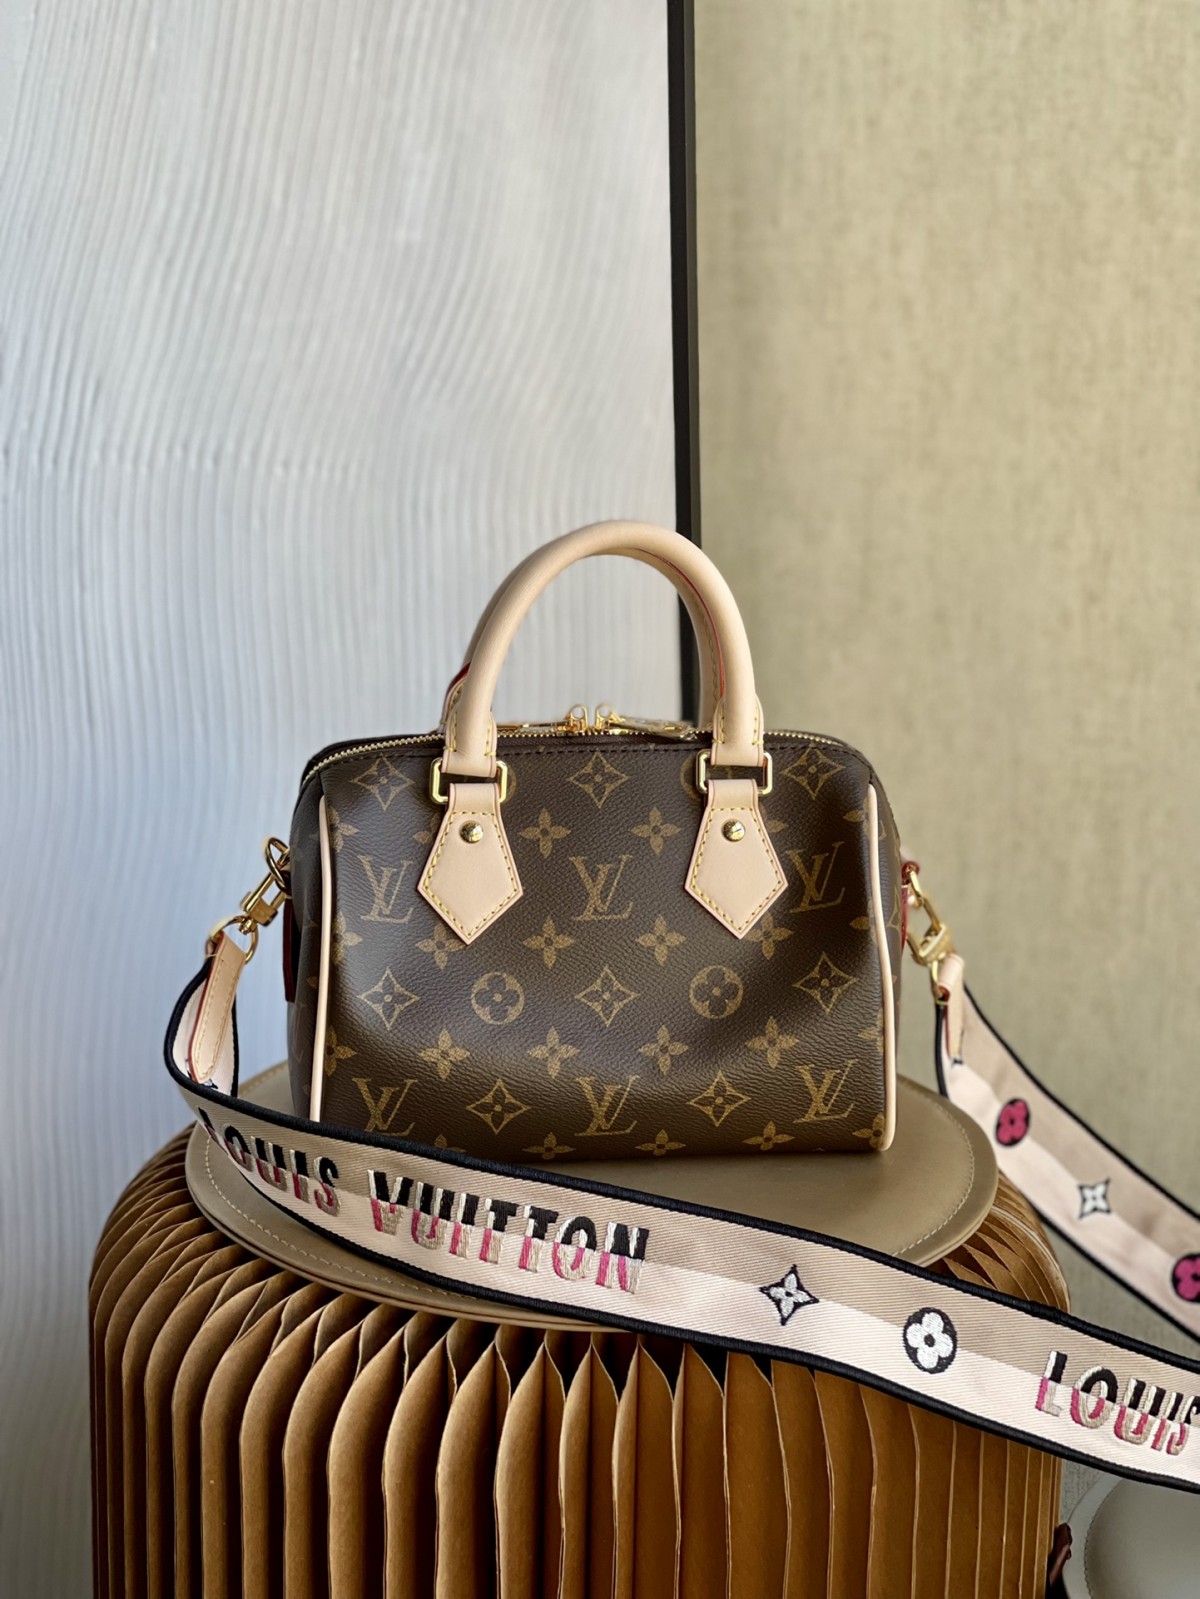 Video: Shebag best seller of Louis Vuitton bags in 2023 (2023 Week 50)-Paras laatu väärennetty Louis Vuitton laukku verkkokauppa, replika suunnittelija laukku ru